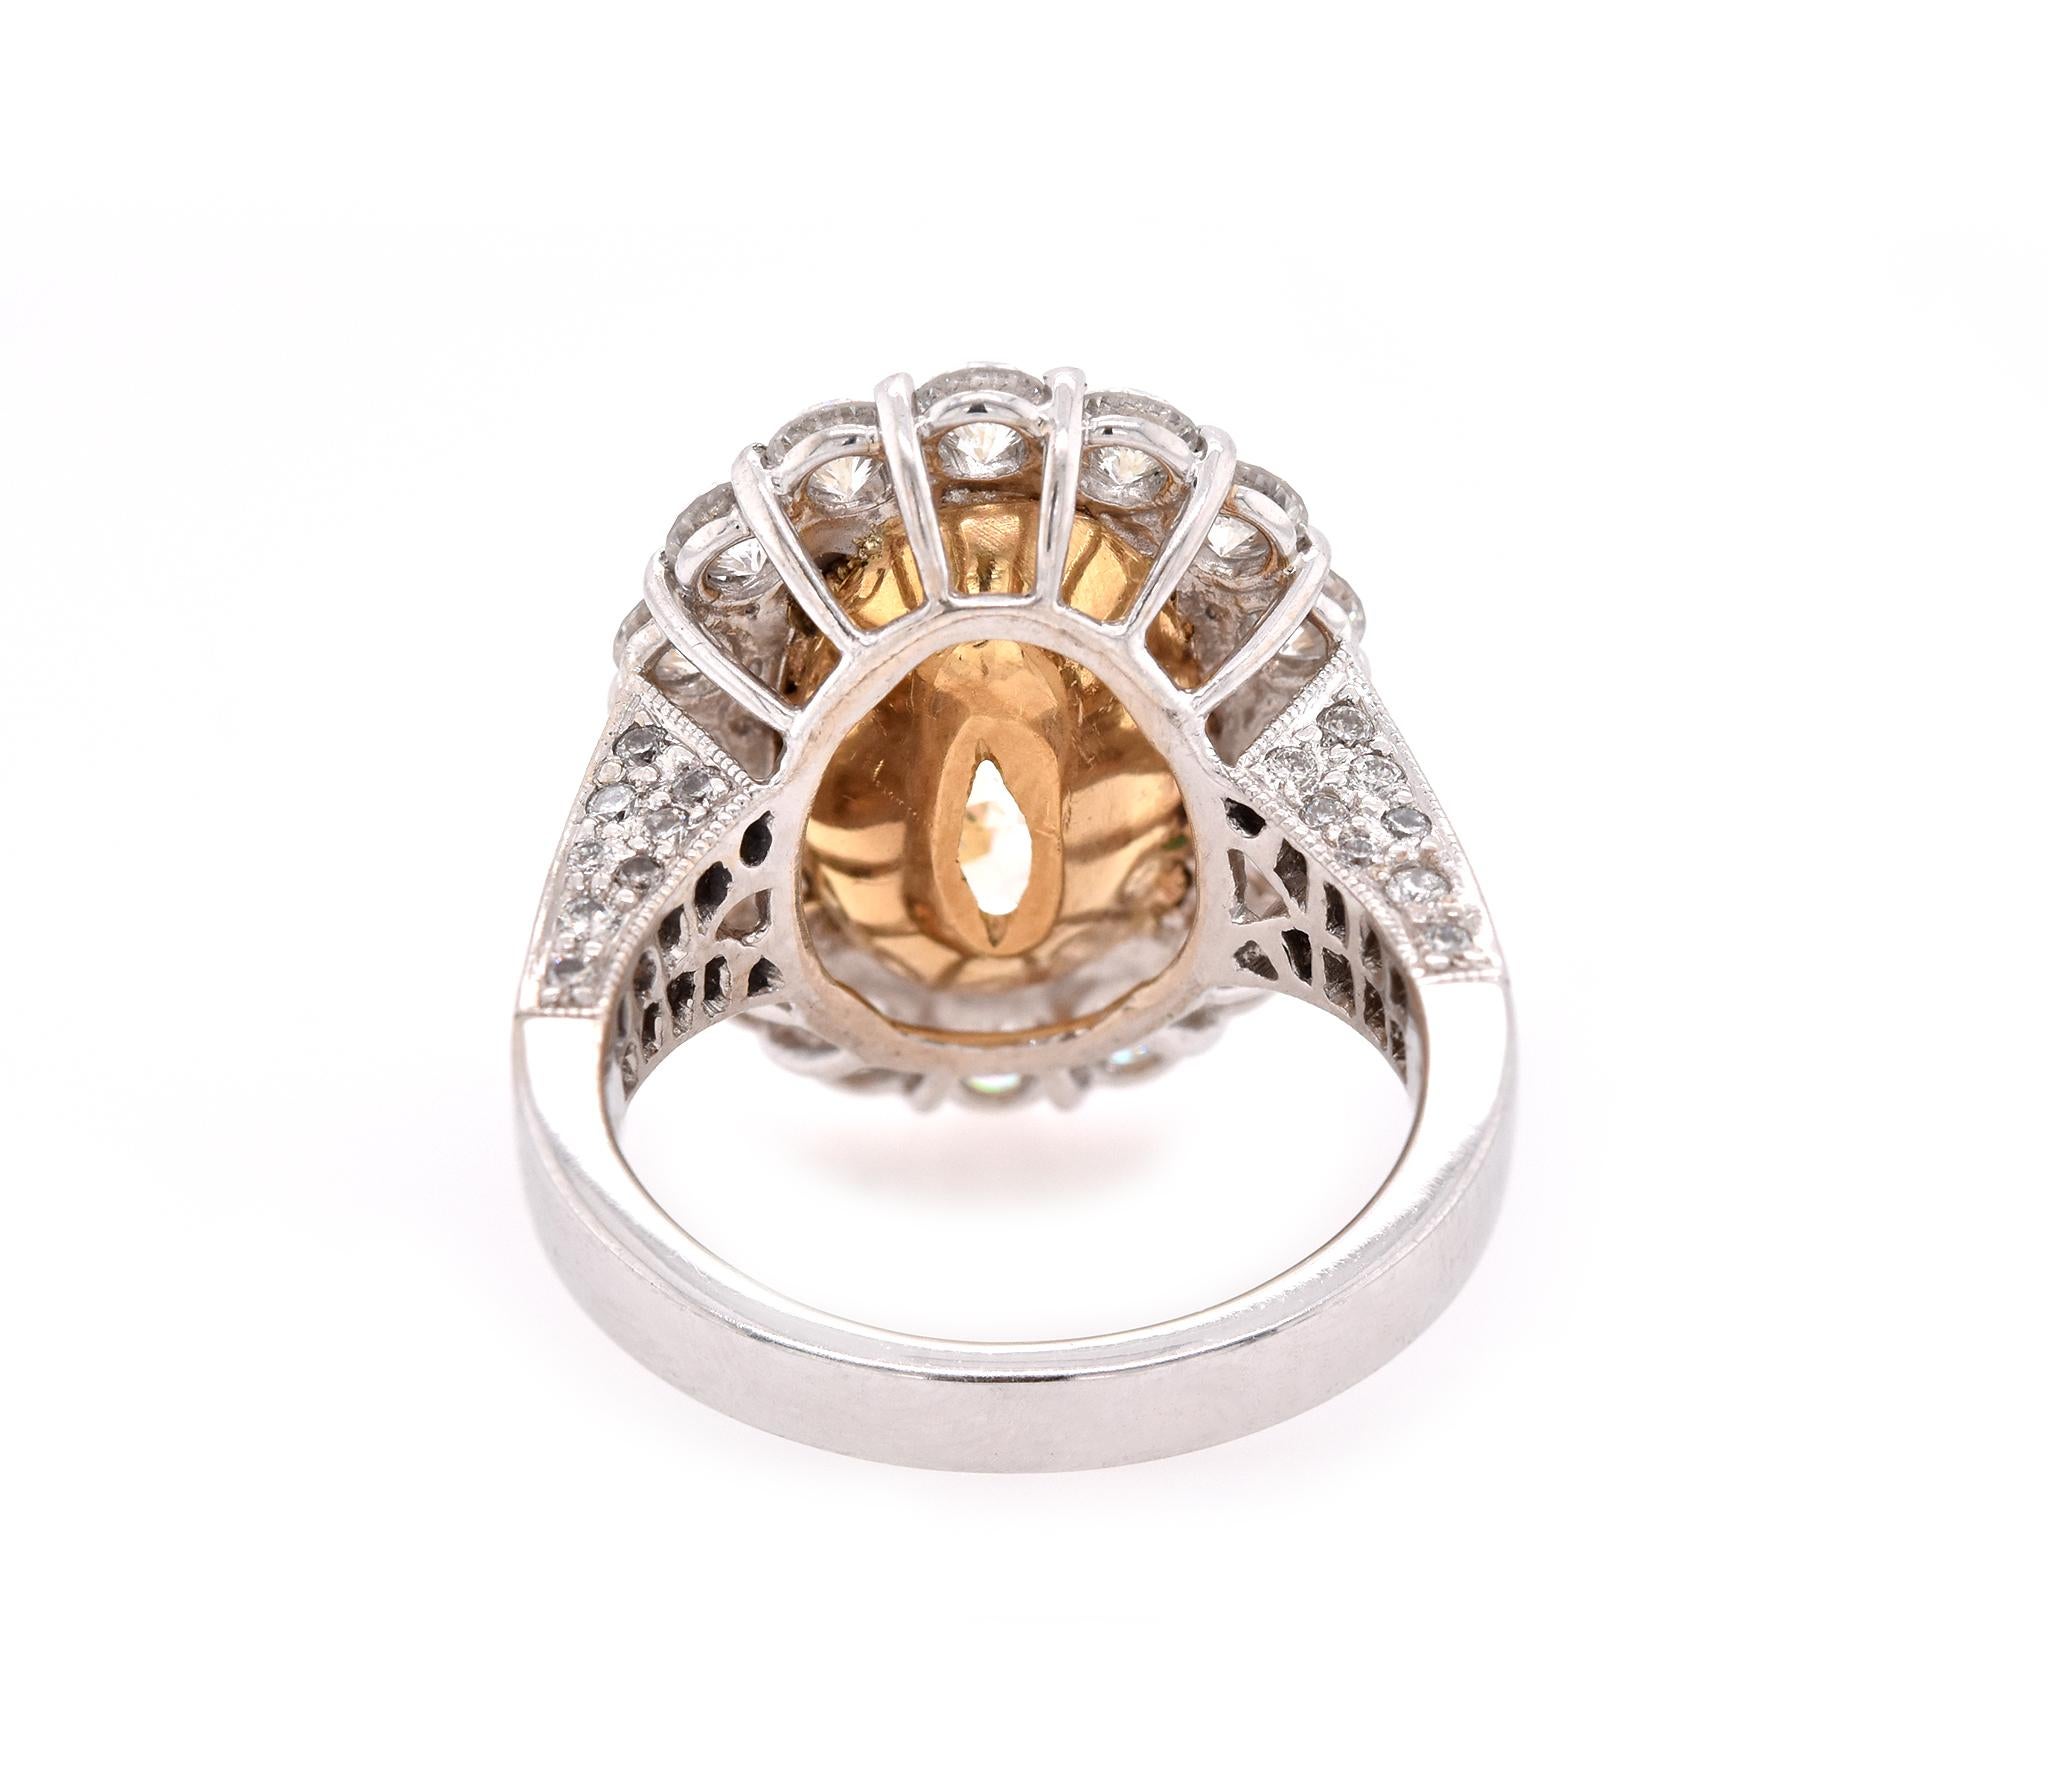 Women's 18 Karat White Gold 8.06 Carat Oval Diamond Engagement Ring